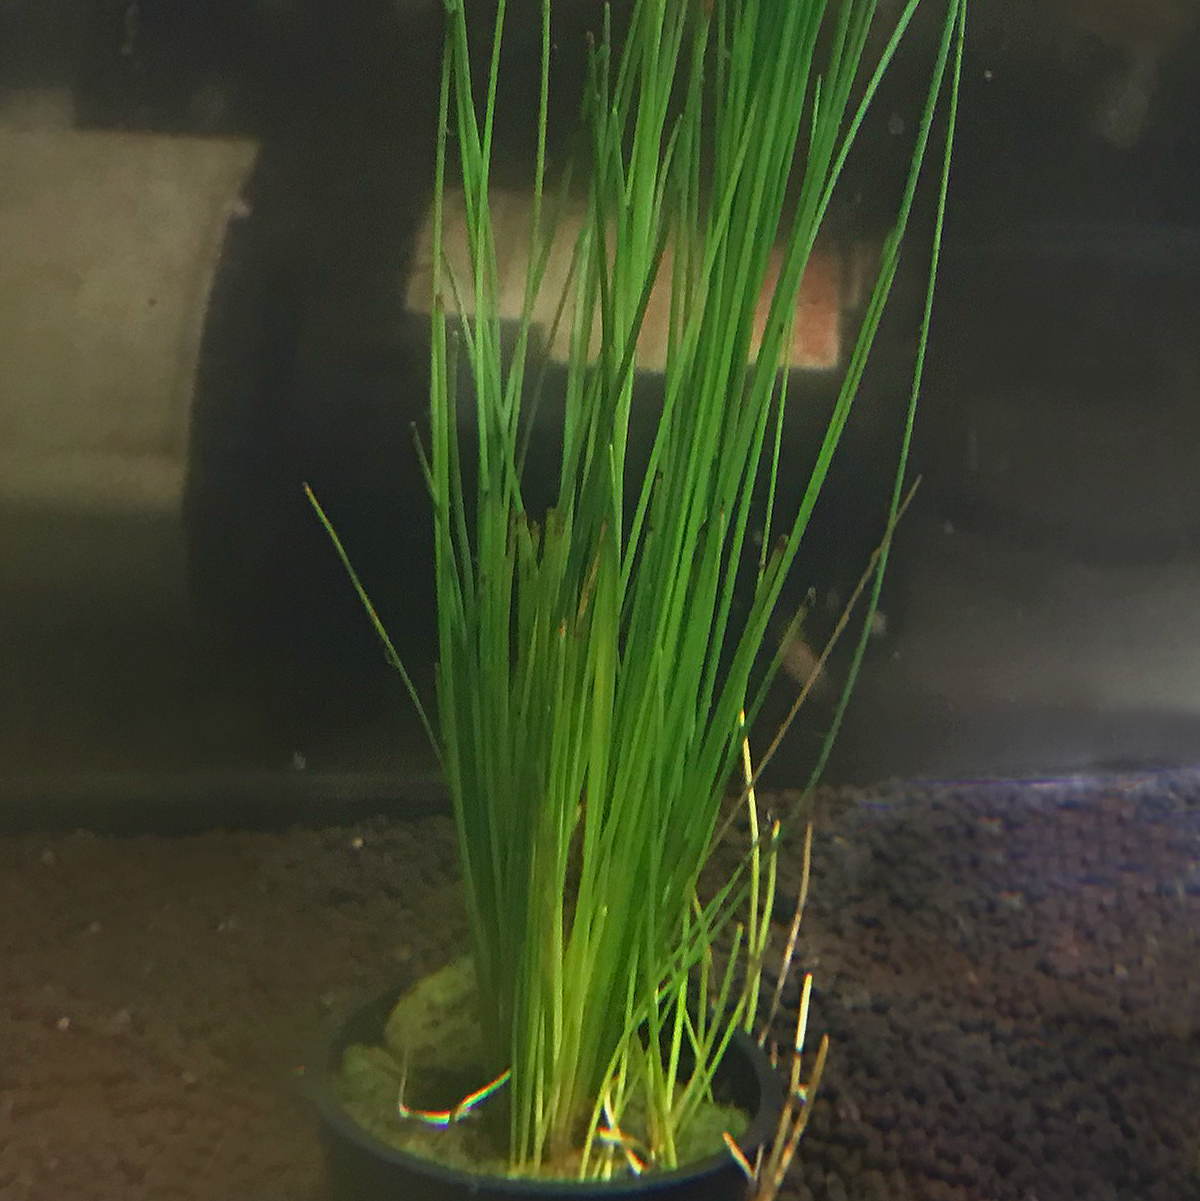 Giant Hairgrass Eleocharis montevidensis Live Aquarium Plants 5 large clumps 